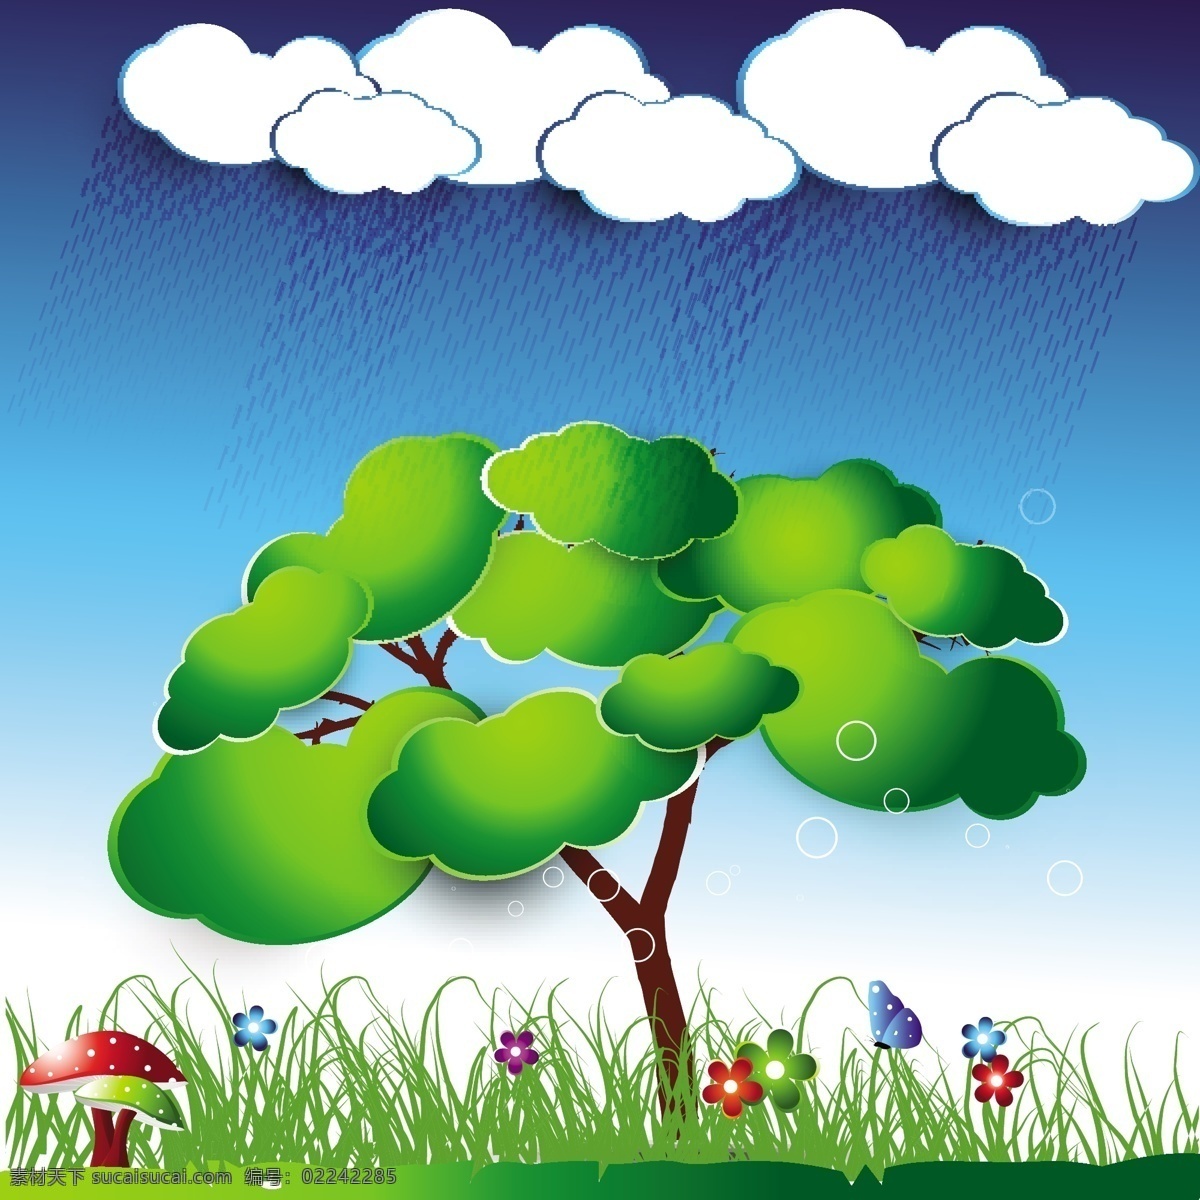 可爱 的卡 通 矢量 好孩子 儿童 漫画 蘑菇 草 道路 好的 蝴蝶 花 矢量素材 树 雨 孩子们的漫画 梯度 云 湛蓝的天空 自然